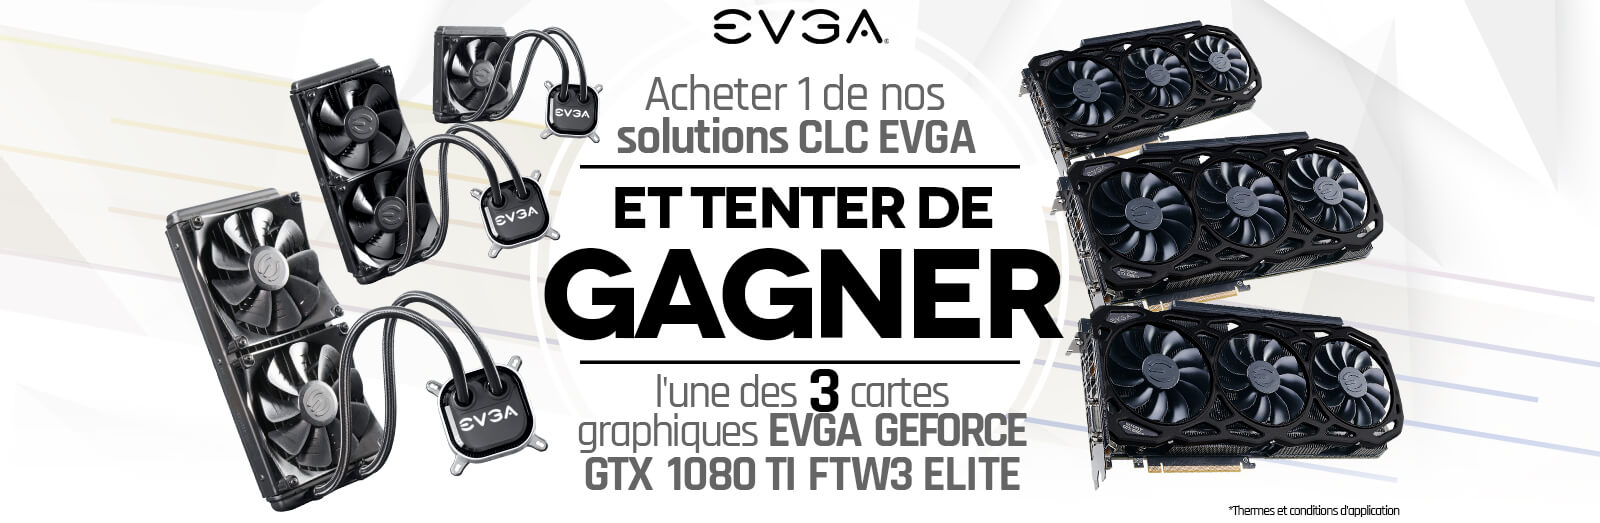 Acheter 1 de nos solutions CLC EVGA et tenter de gagner l'une des 3 cartes graphiques EVGA GeForce GTX 1080 Ti FTW3 ELITE